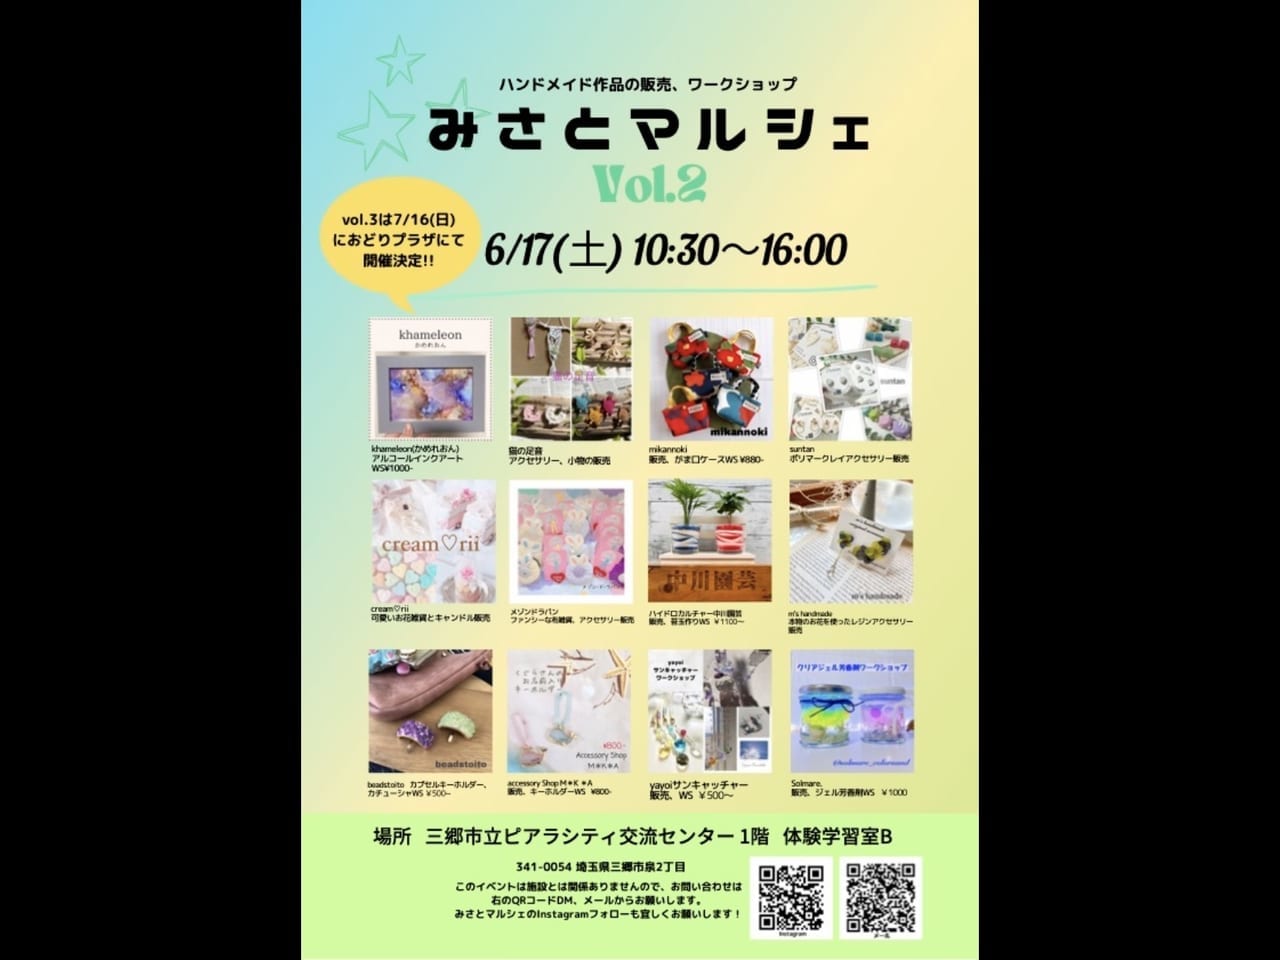 【三郷市】ハンドメイド作品の販売やワークショップで実際に作品制作体験ができる「みさとマルシェ」が開催されるそうです！